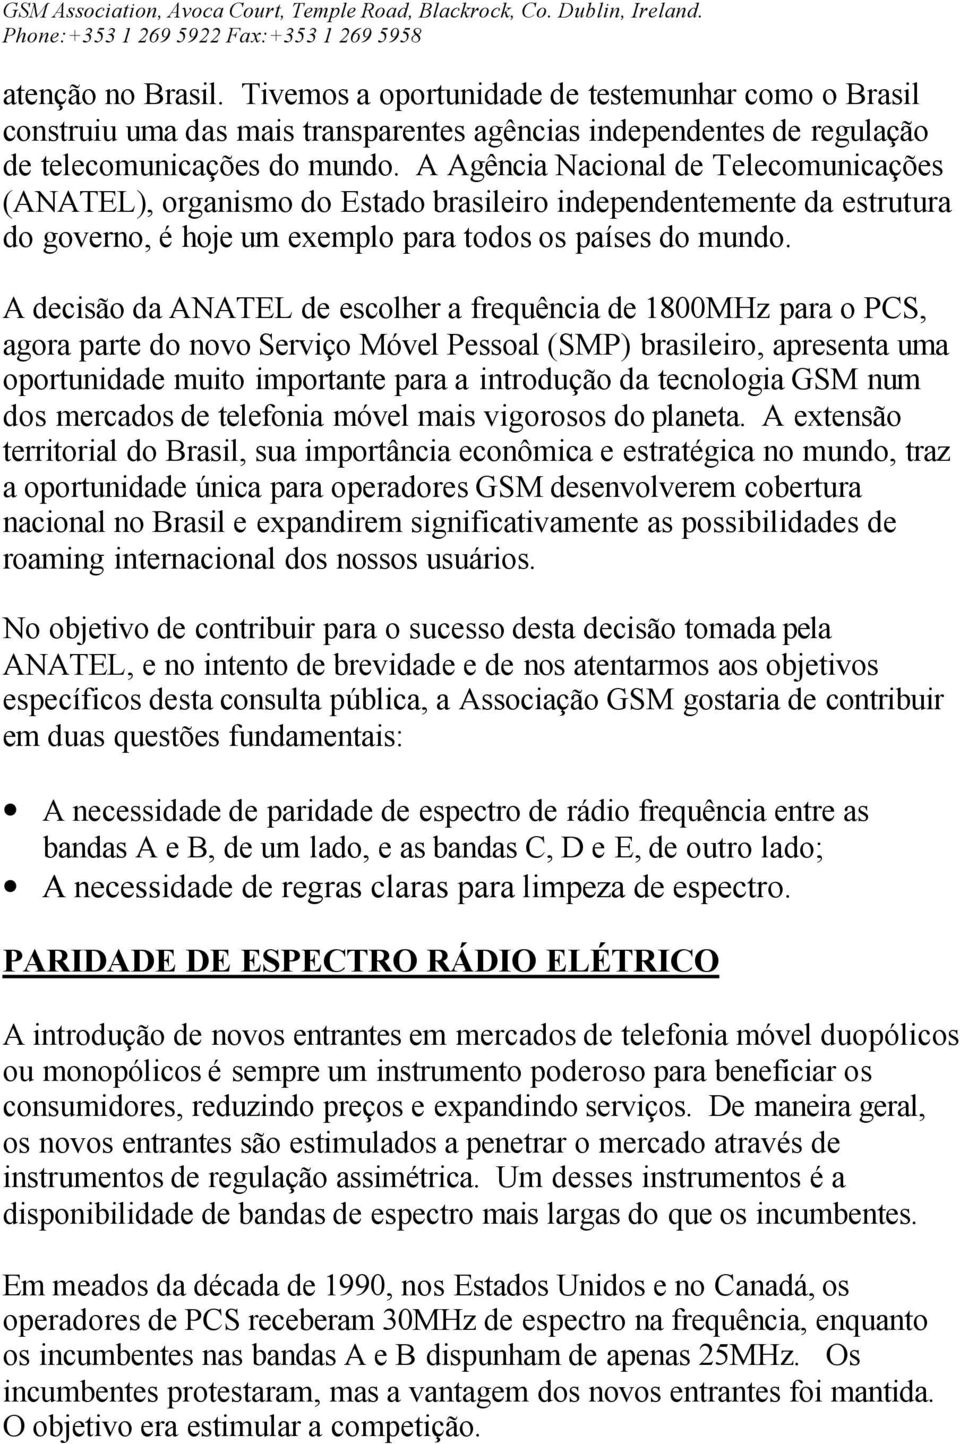 A decisão da ANATEL de escolher a frequência de 1800MHz para o PCS, agora parte do novo Serviço Móvel Pessoal (SMP) brasileiro, apresenta uma oportunidade muito importante para a introdução da